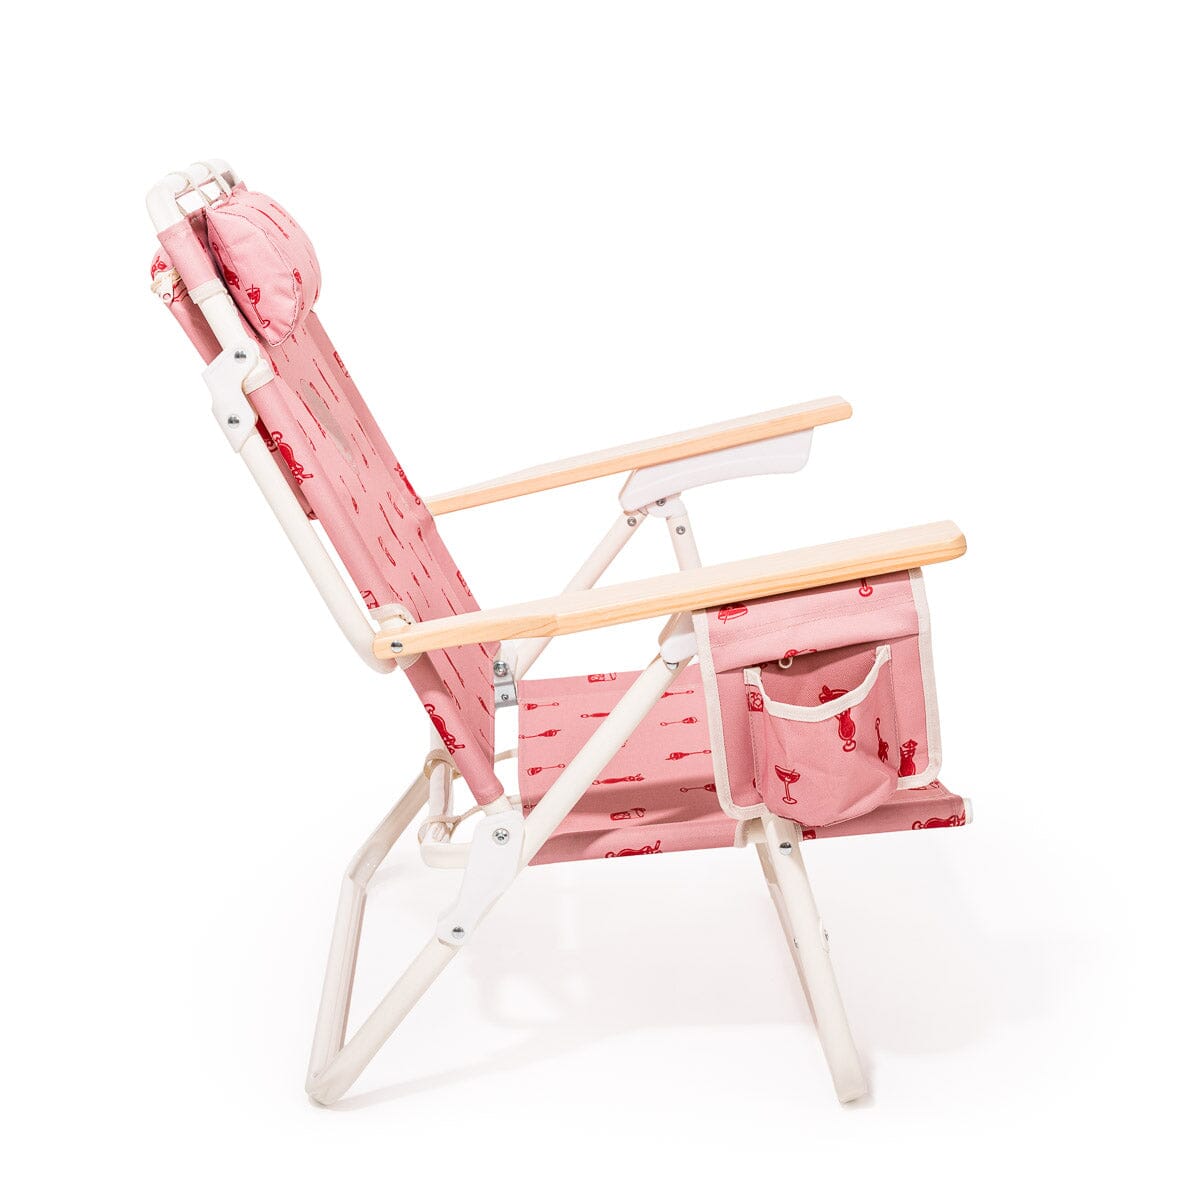 The Mañana Chair - Strawberry Daiquiri Marg Mañana Beach Chair Margaritaville by B&P Co. 